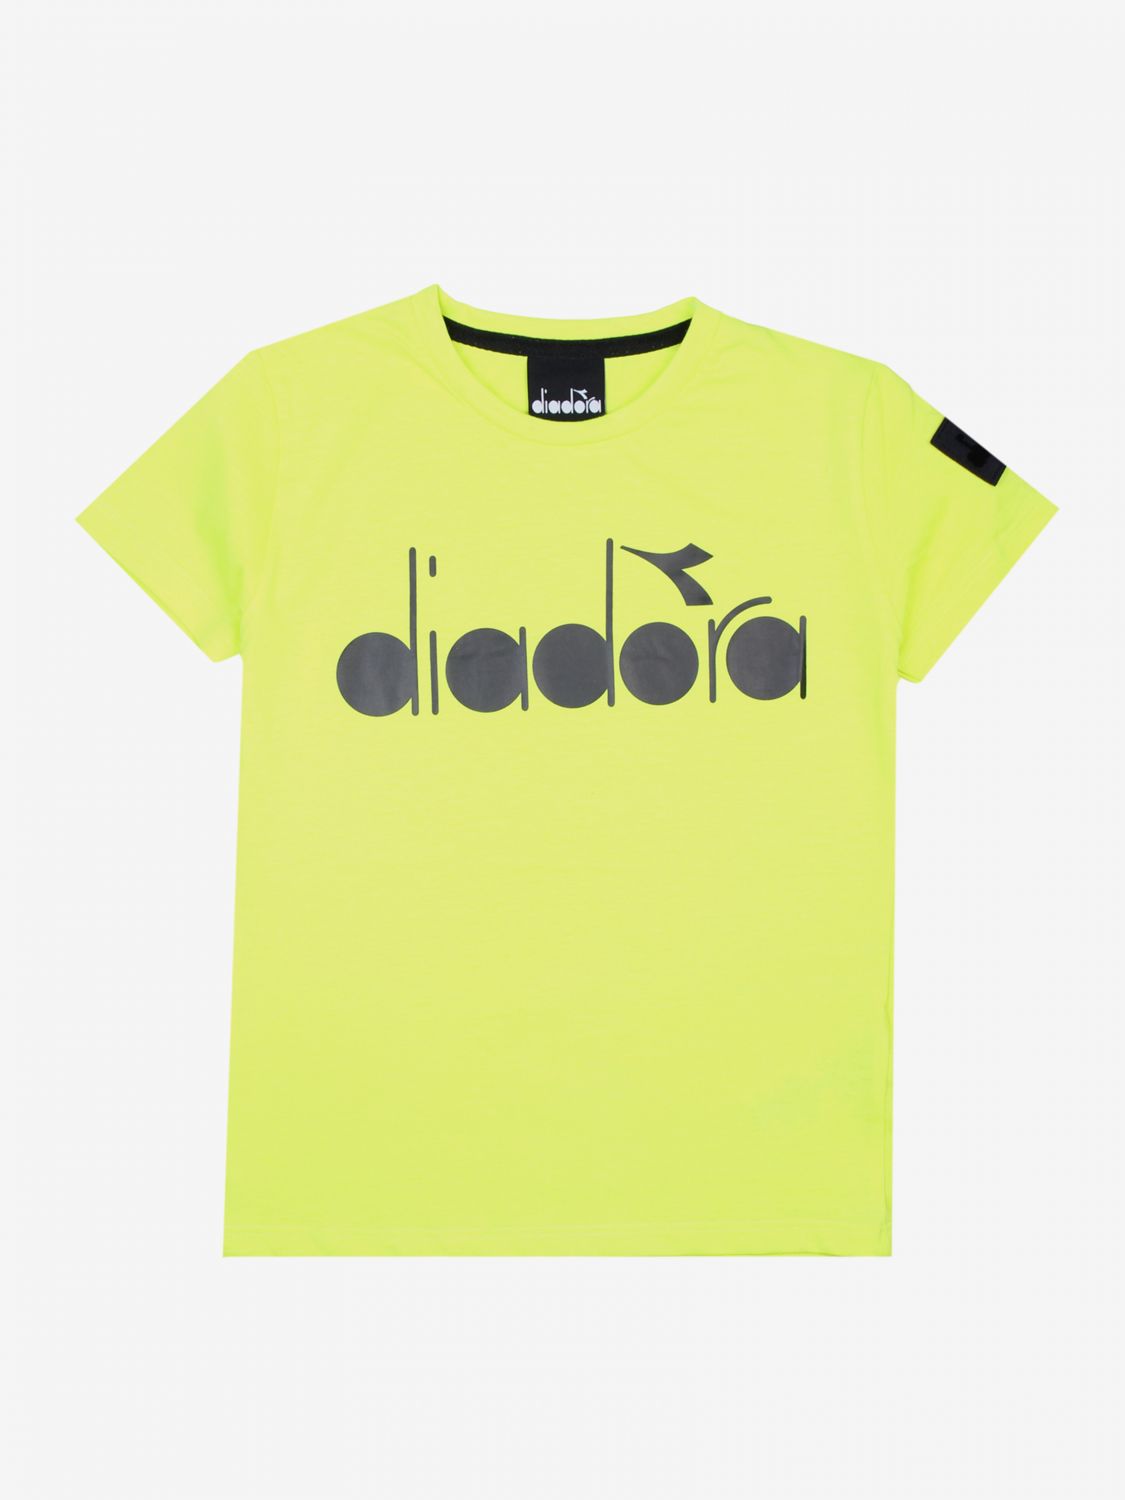 T-shirt kids Diadora | T-Shirt Diadora Kids Yellow | T-Shirt Diadora ...